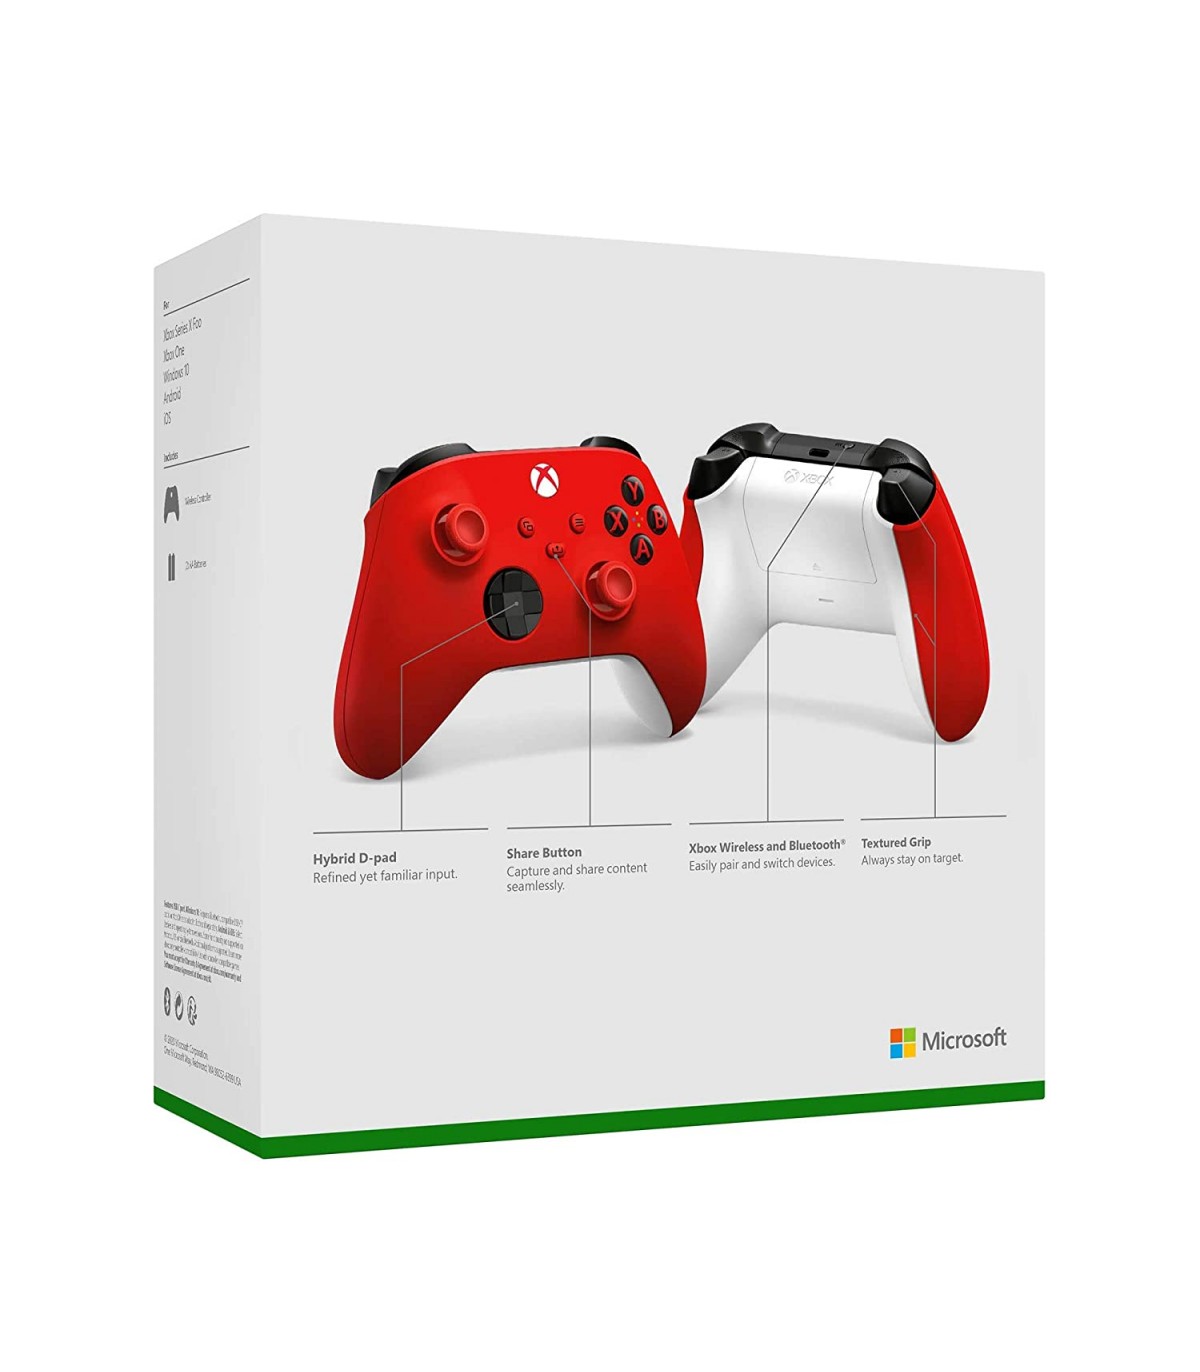 دسته Xbox Wireless Controller طرح Pulse Red برای ایکس باکس سری